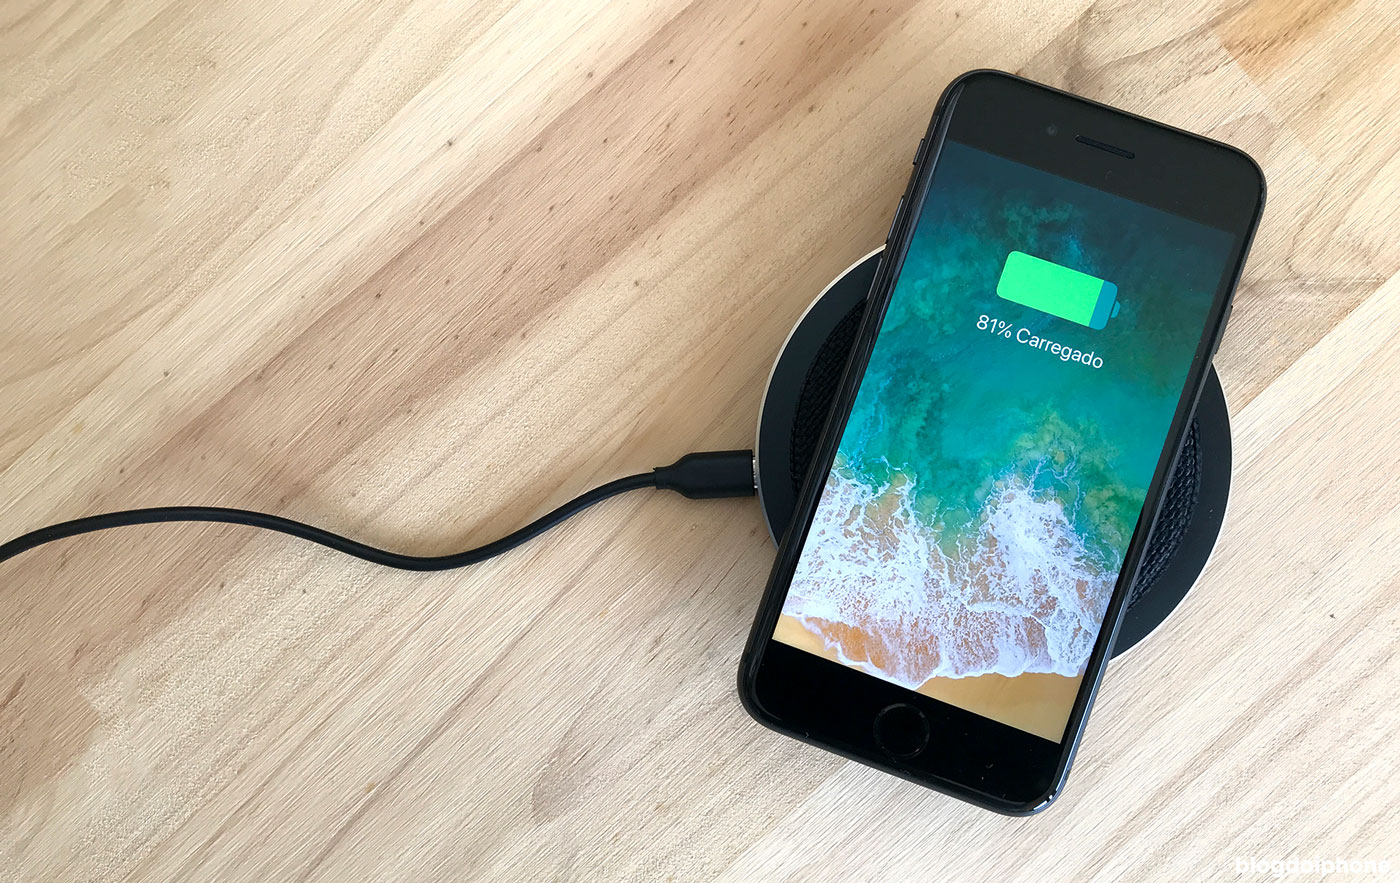 Carregamento “sem fio” no iPhone: o que é e como funciona